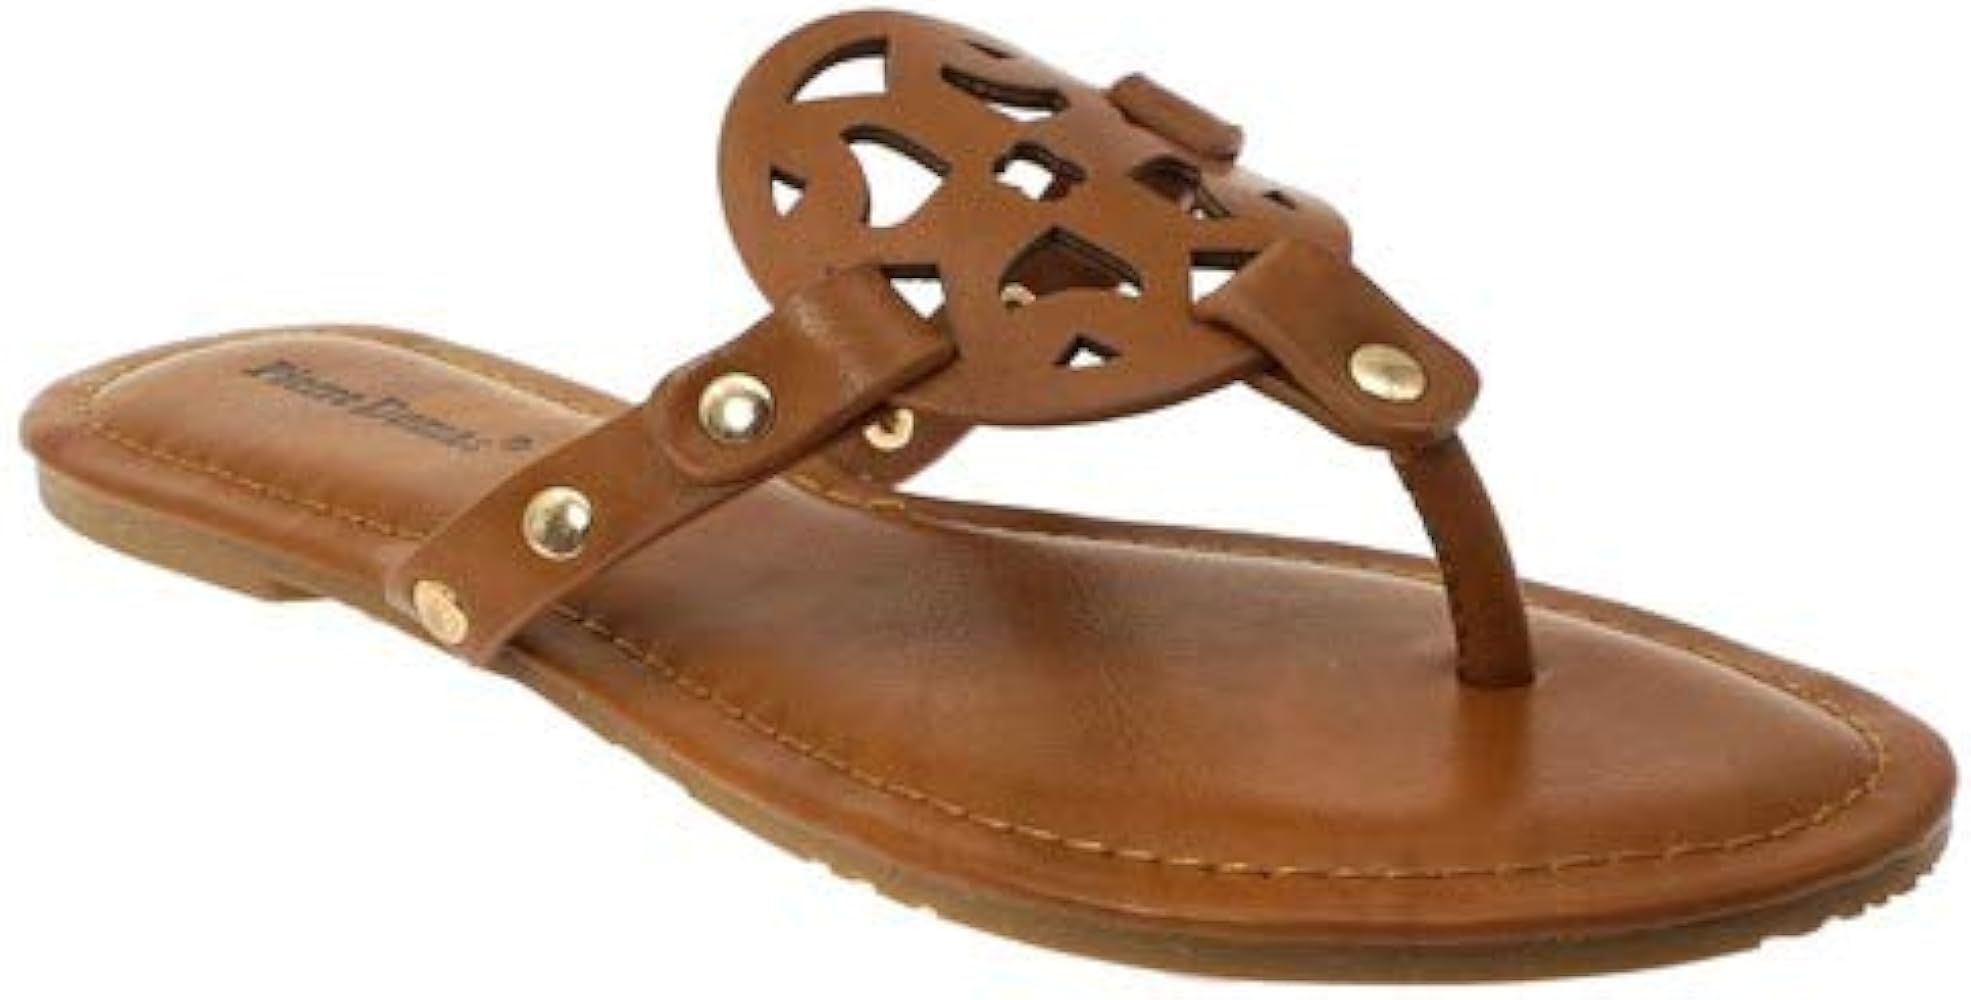 Sandal, Sandals, sandals amazon, slide sandals, Slides, sandal heels, flat sandals, braided sandals | Amazon (US)